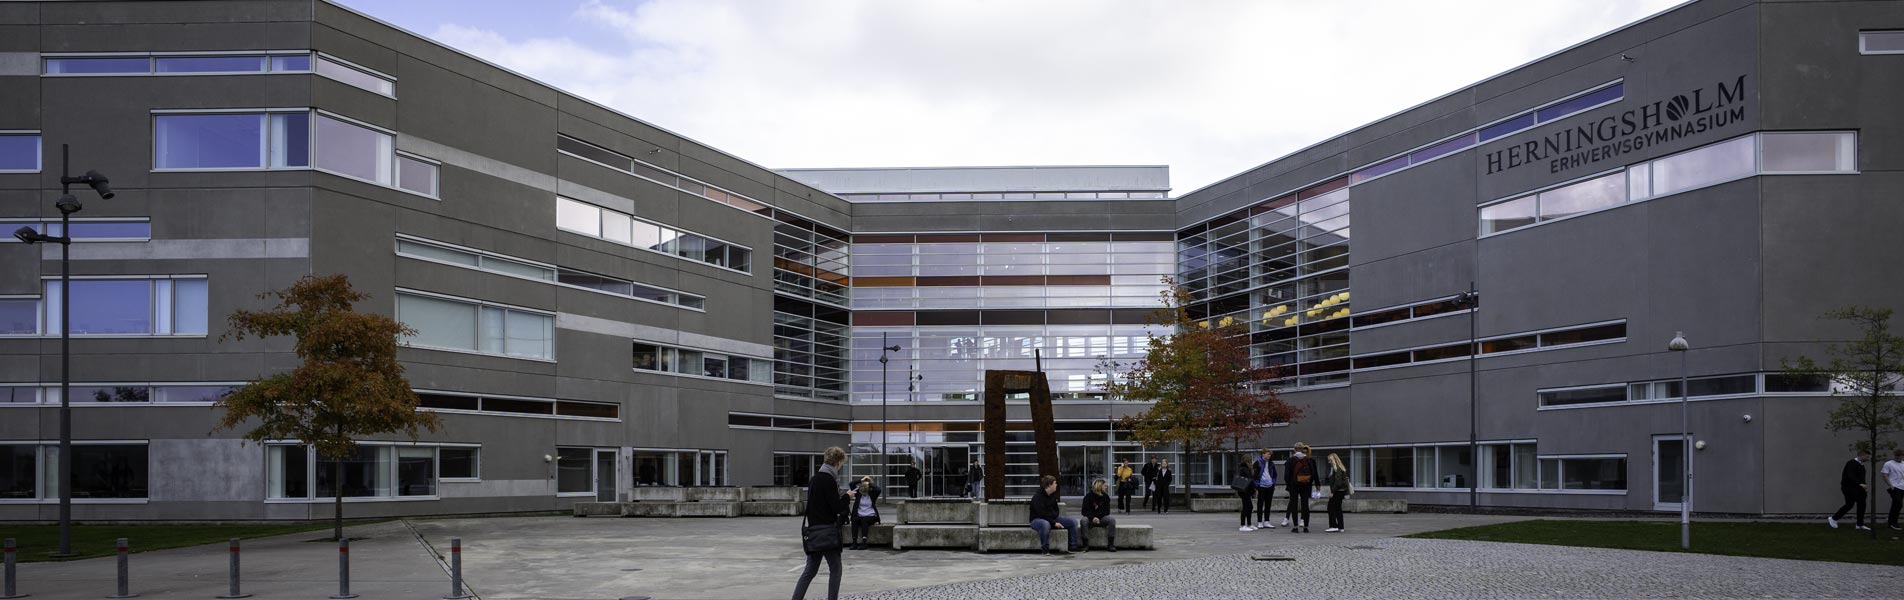 Herningsholm Erhvervsskole får et nyt samlingspunkt